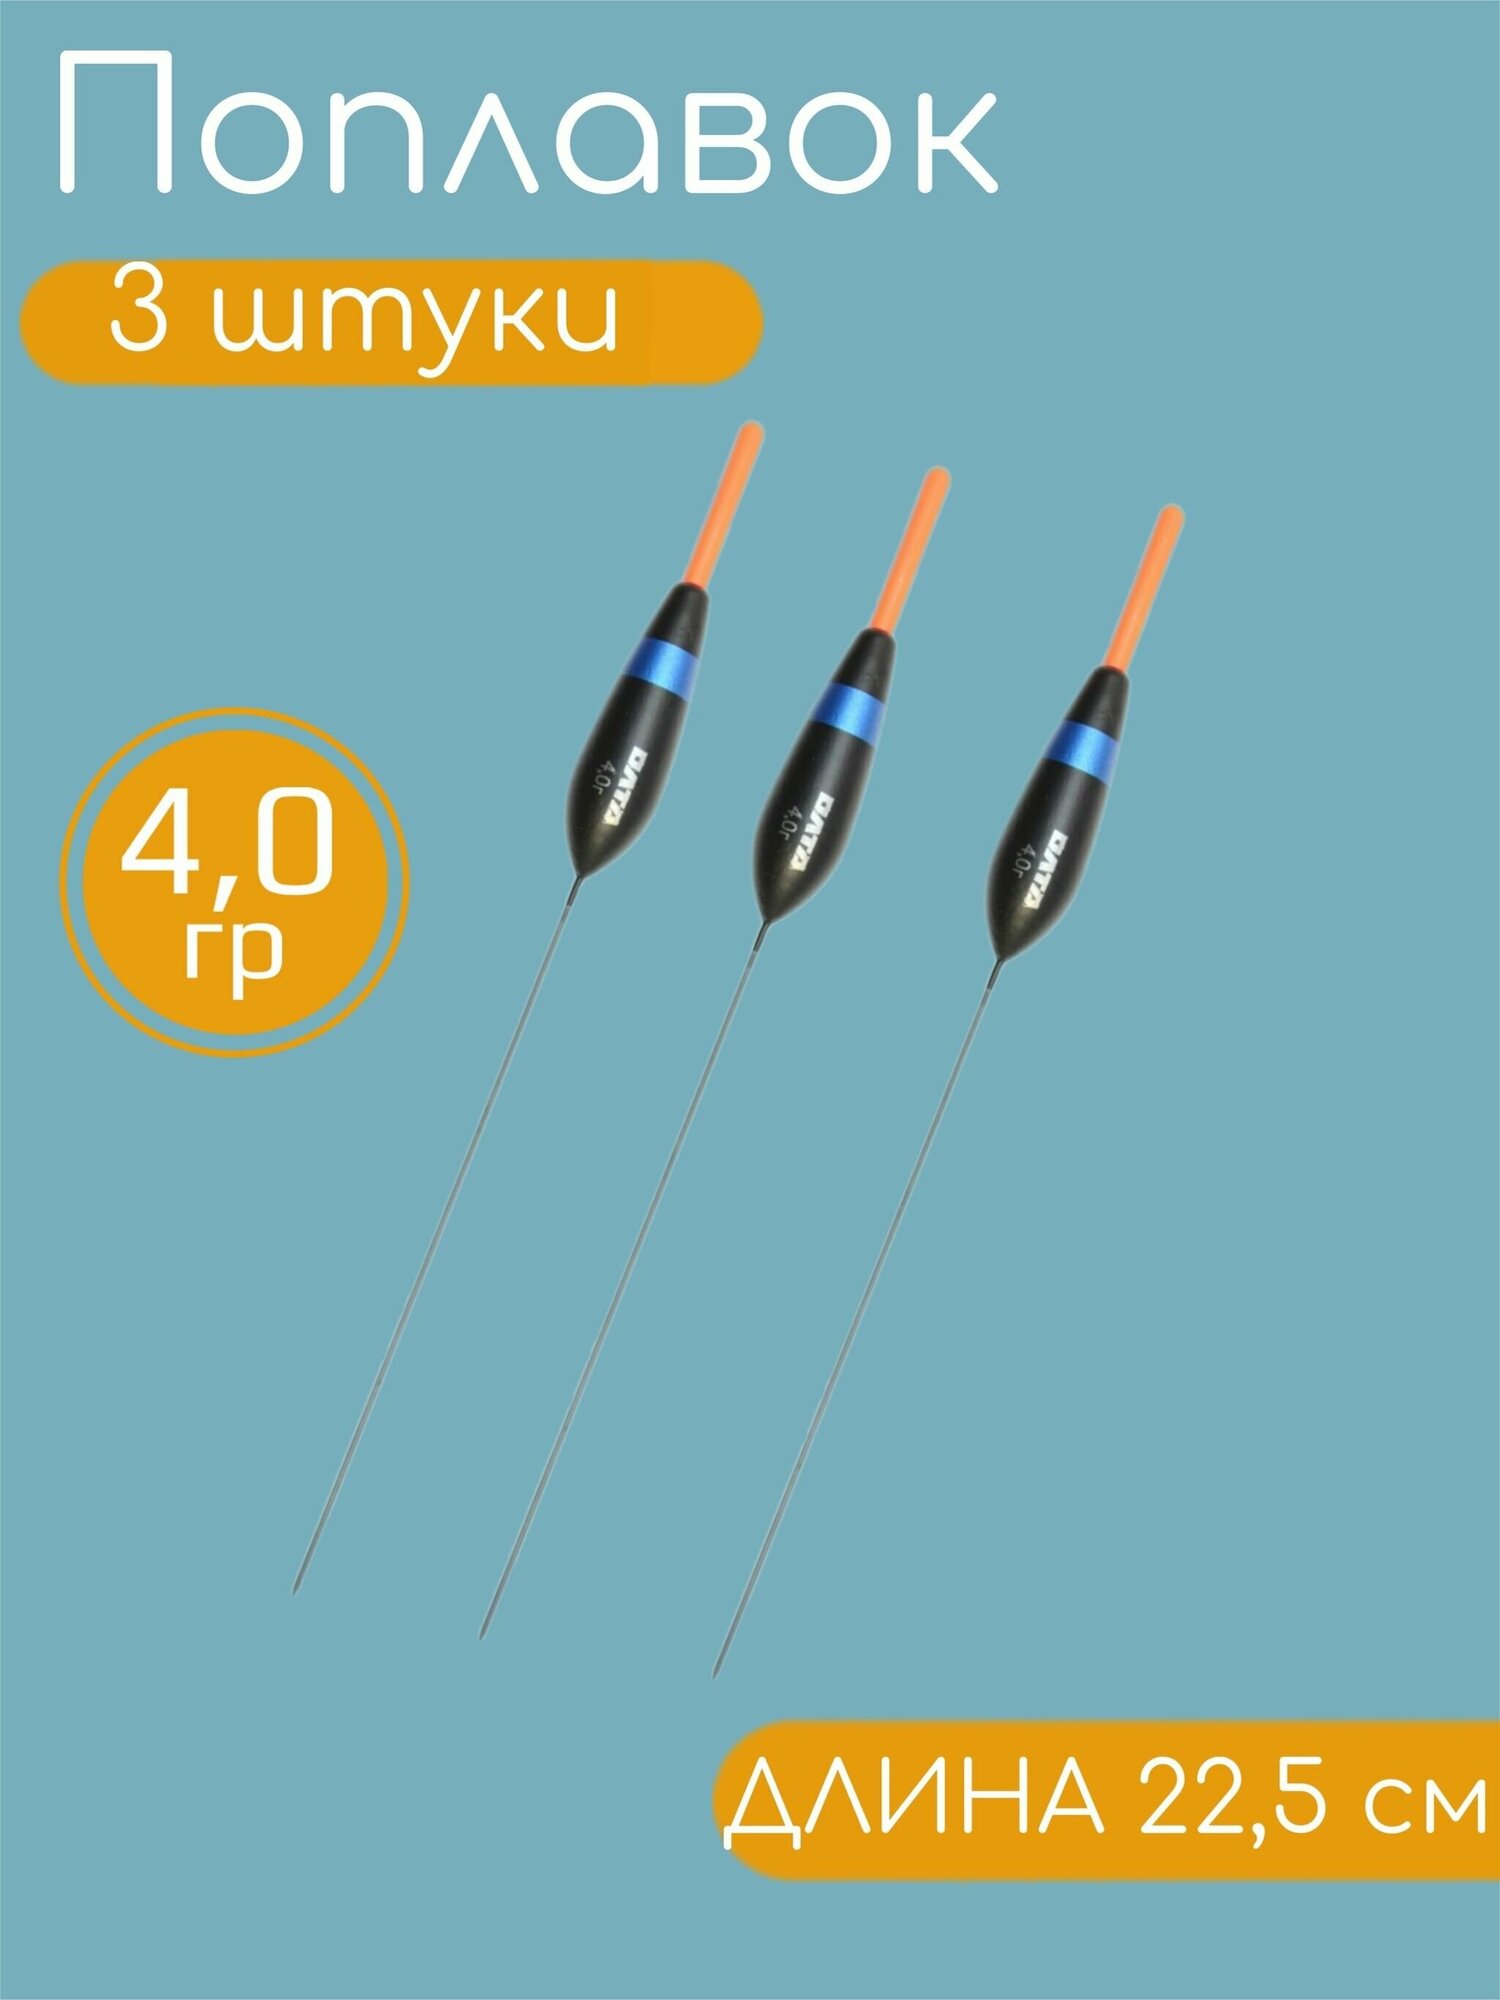 3 штуки Рыболовный Поплавок из бальсы для летней рыбалки 4.0гр, 22.5см